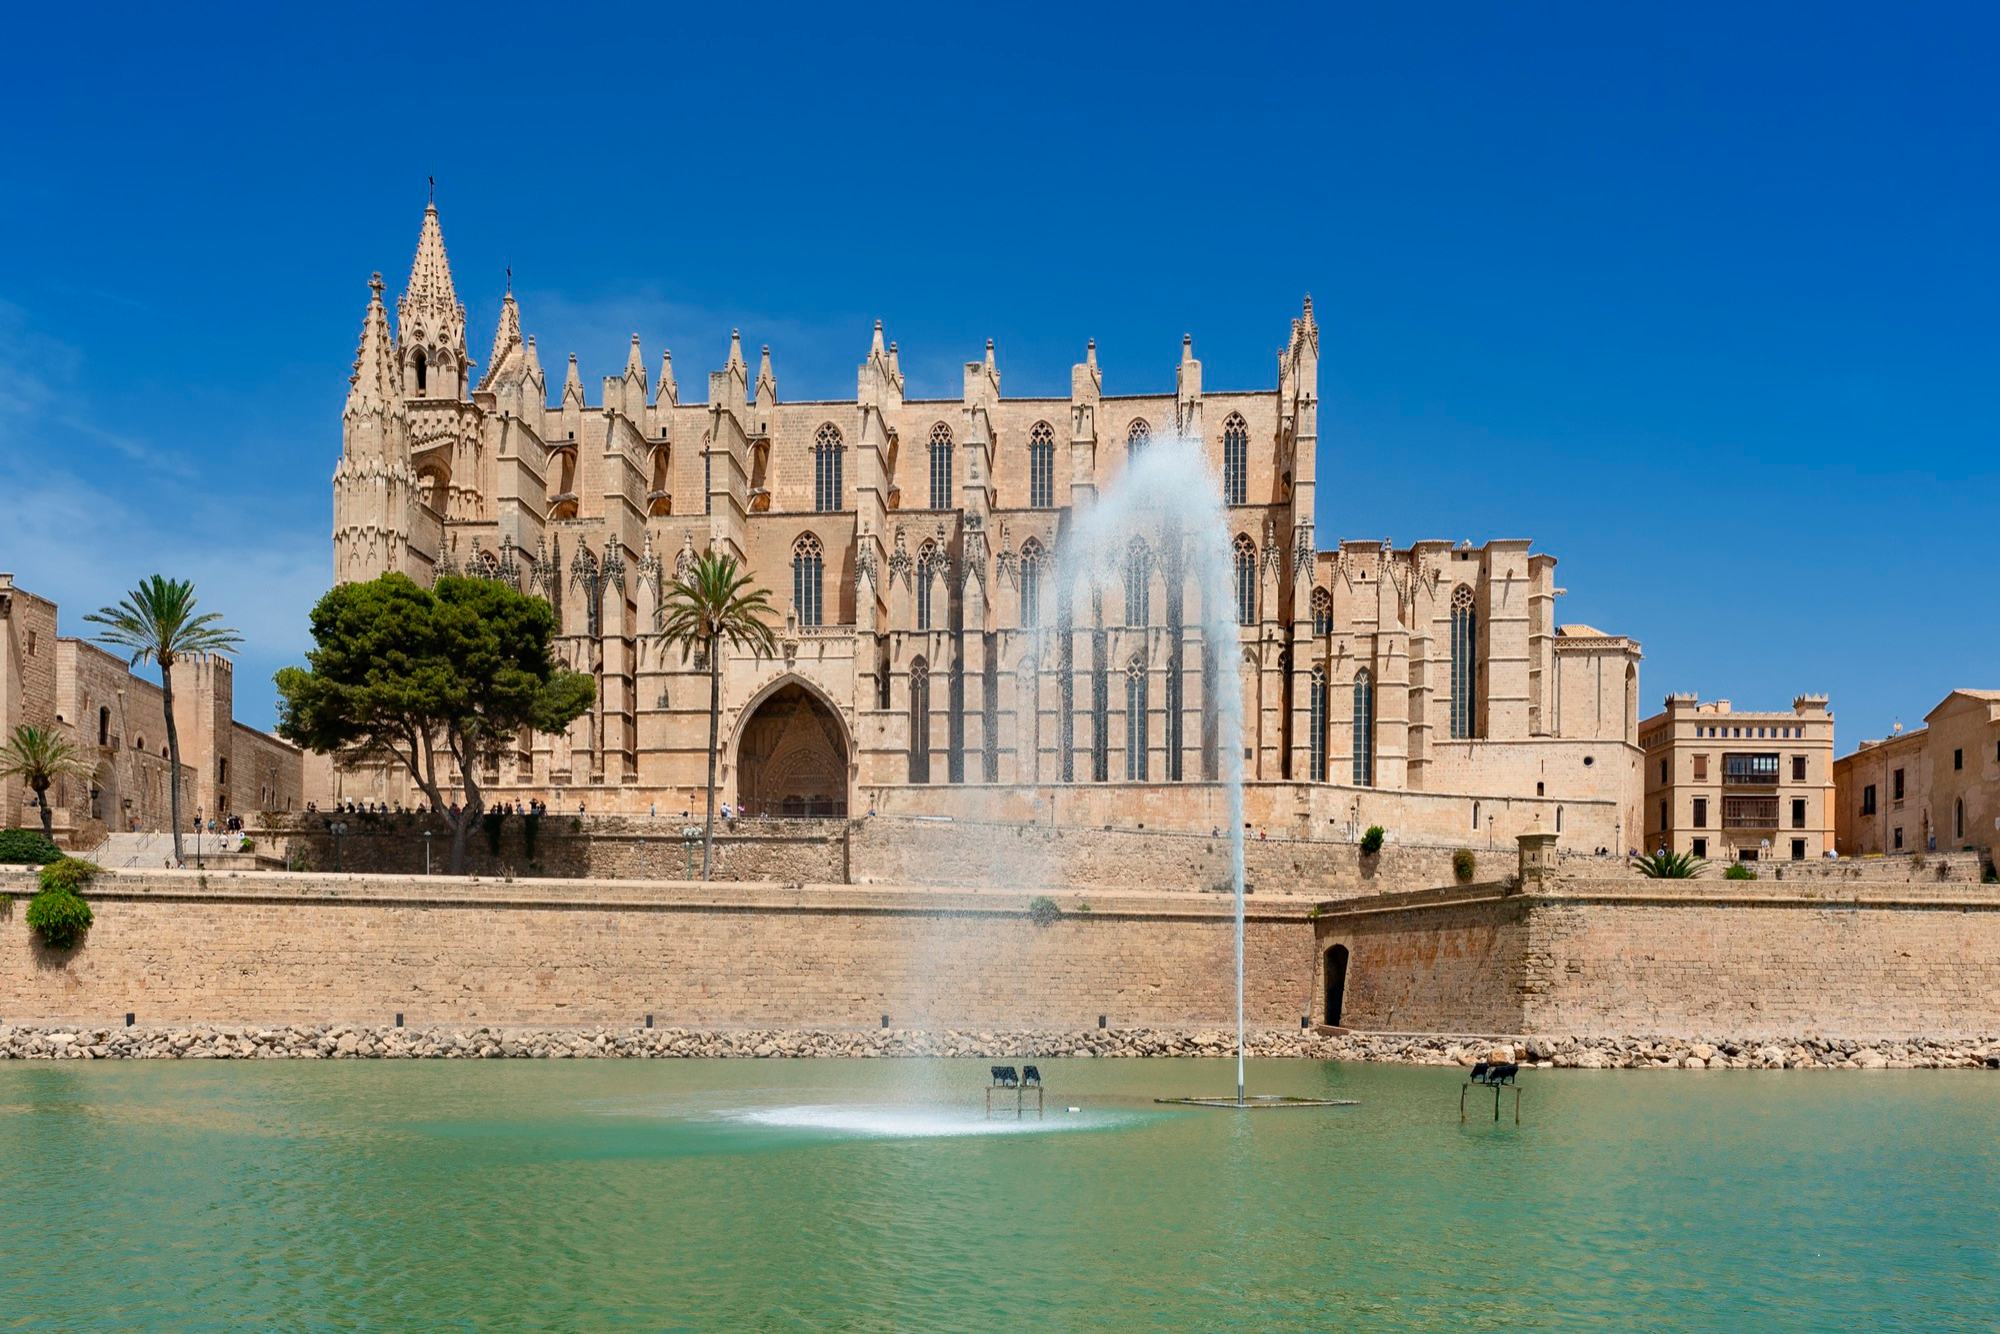 La Seu - bestaunen Sie die beeindruckende Kathedrale wÃfffffffffÃfffffff,Ãffffff,Ãfffff,Ãffff,Ãfff,Ãff,Ãf,Ã,Â¤hrend Ihrer Mallorca-Pauschalreise.